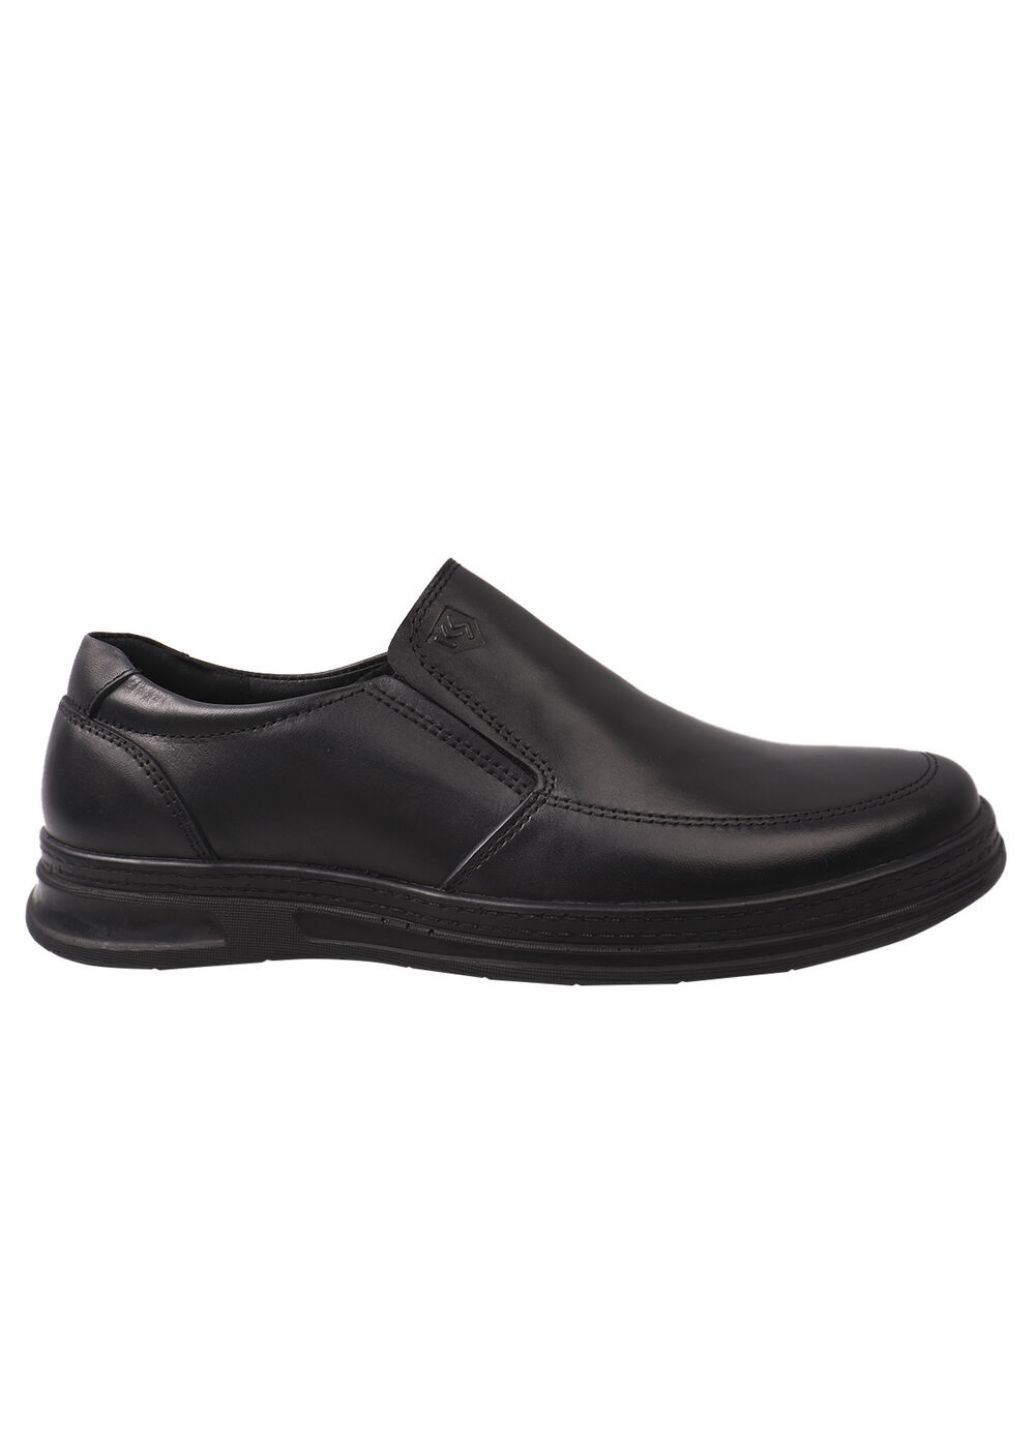 Черные туфли мужские из натуральной кожи, на низком ходу, цвет черный, Konors